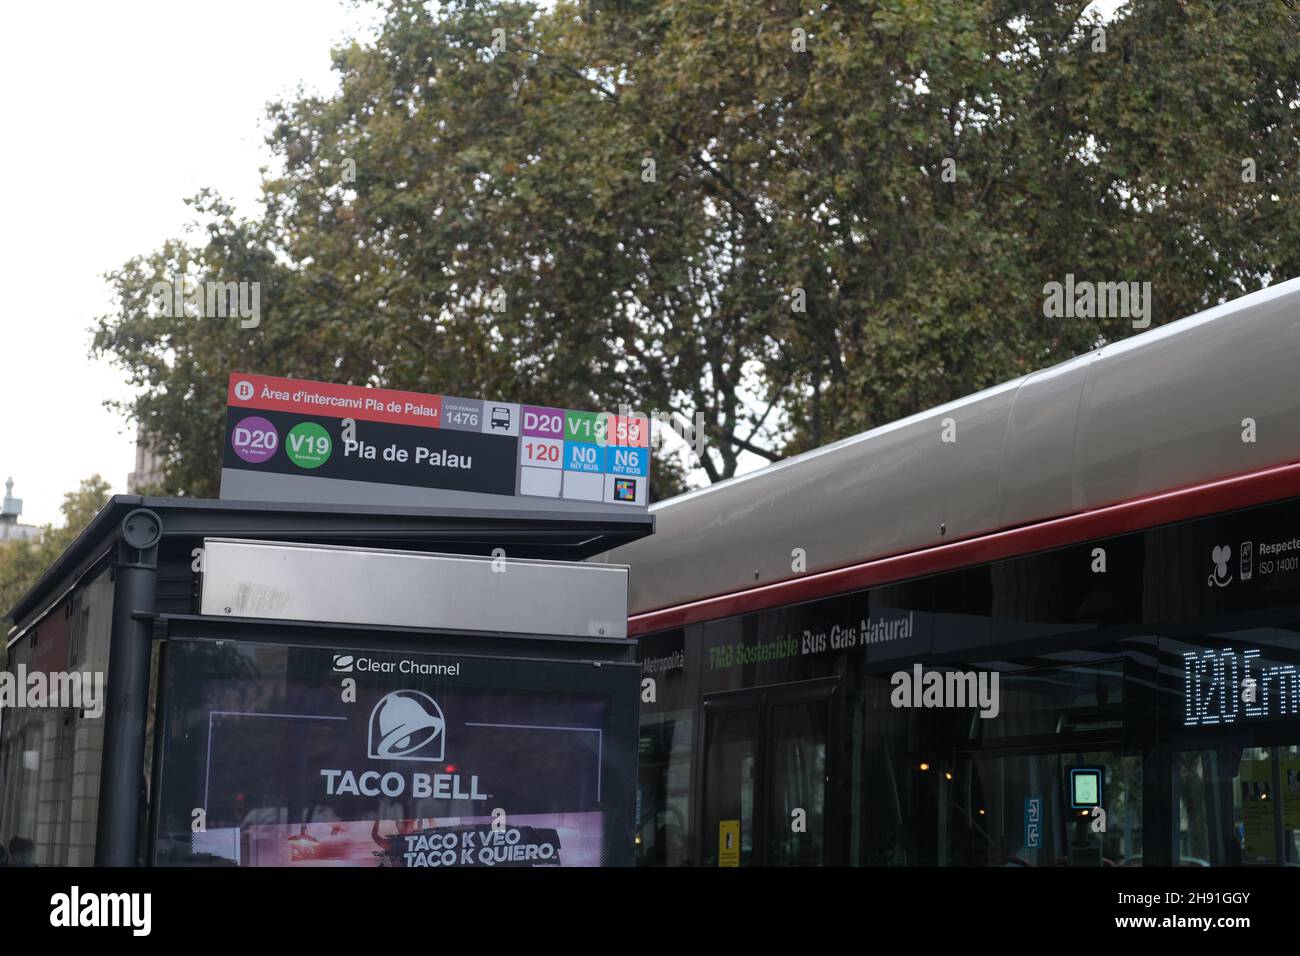 Barcellona, Spagna - 5 novembre 2021: Fermata dell'autobus a Barcellona. Trasporto pubblico, editoriale illustrativo. Foto Stock